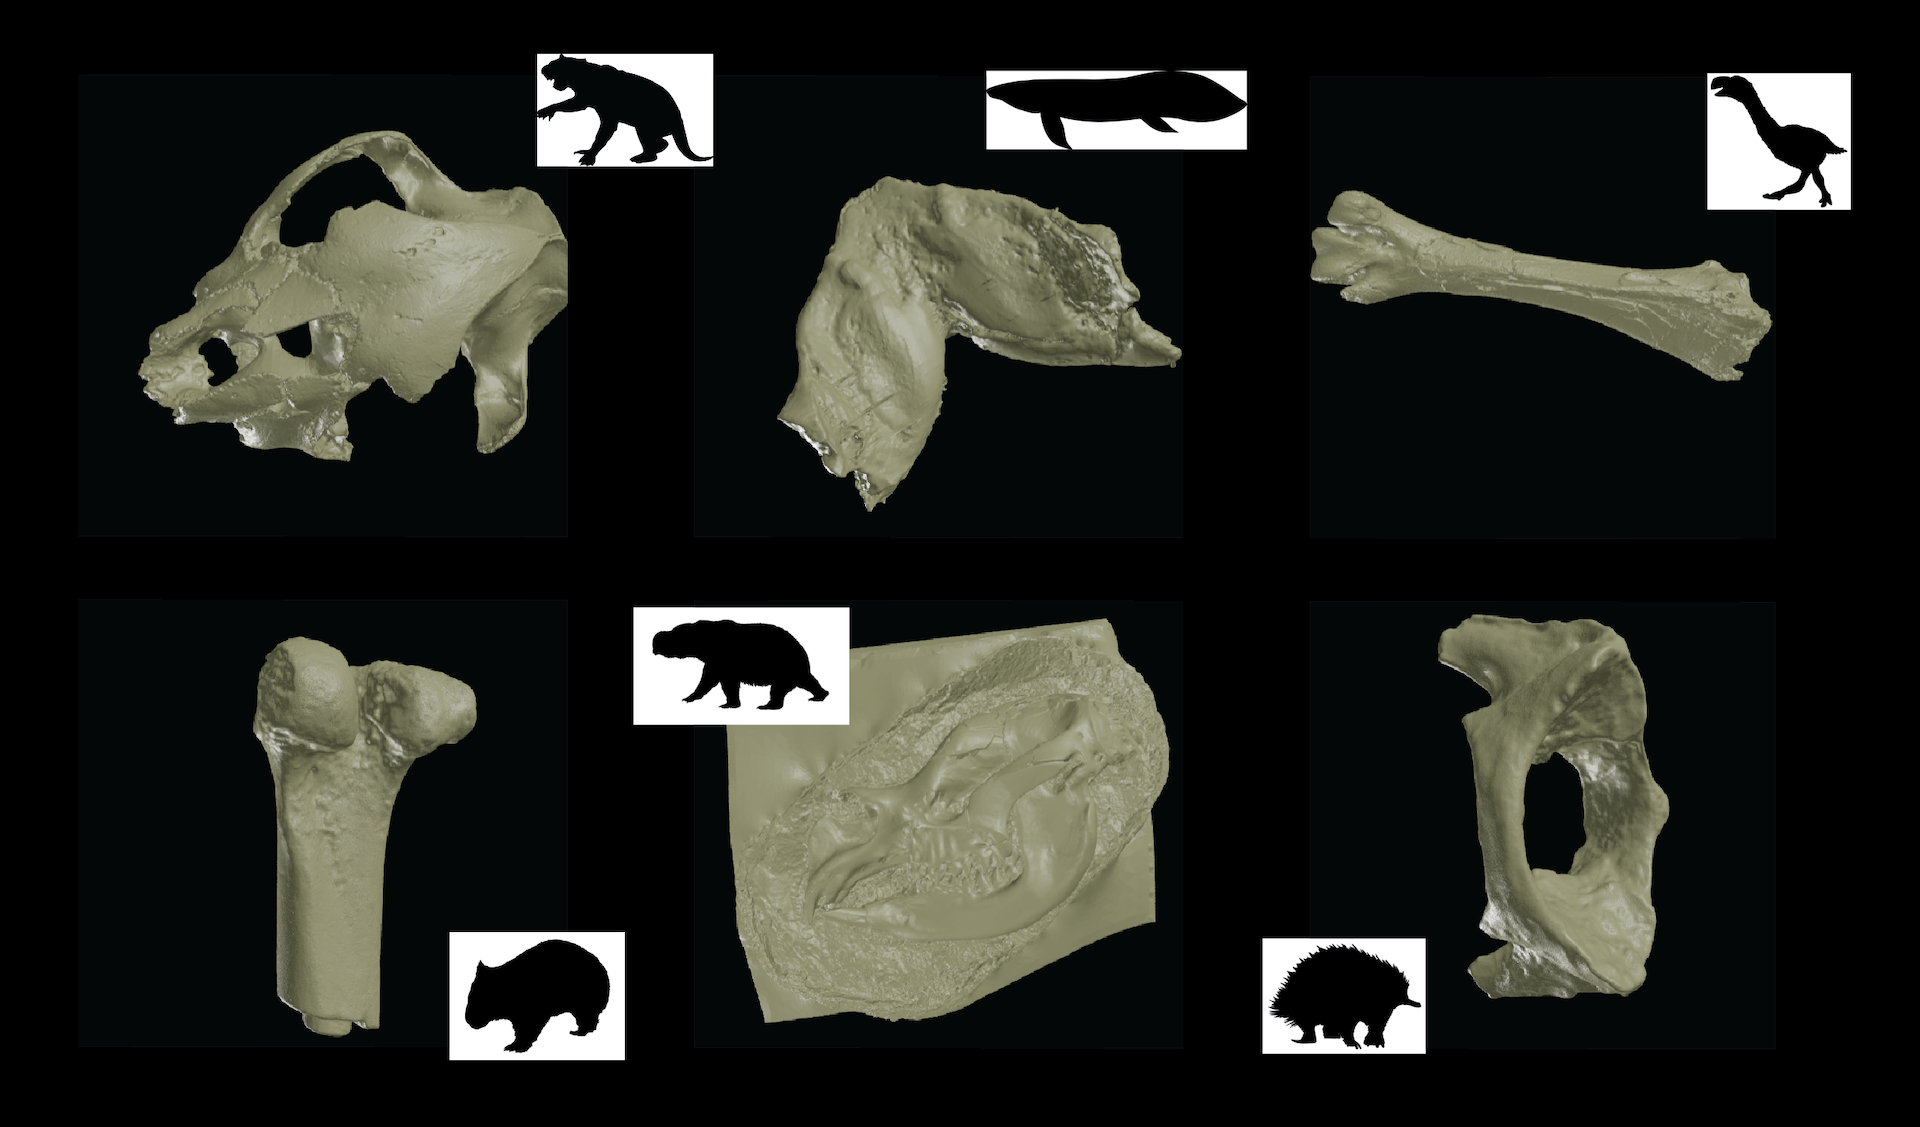 Un colaj prezinta sase modele digitale de fosile insotite de desene cu silueta animalelor din care provin